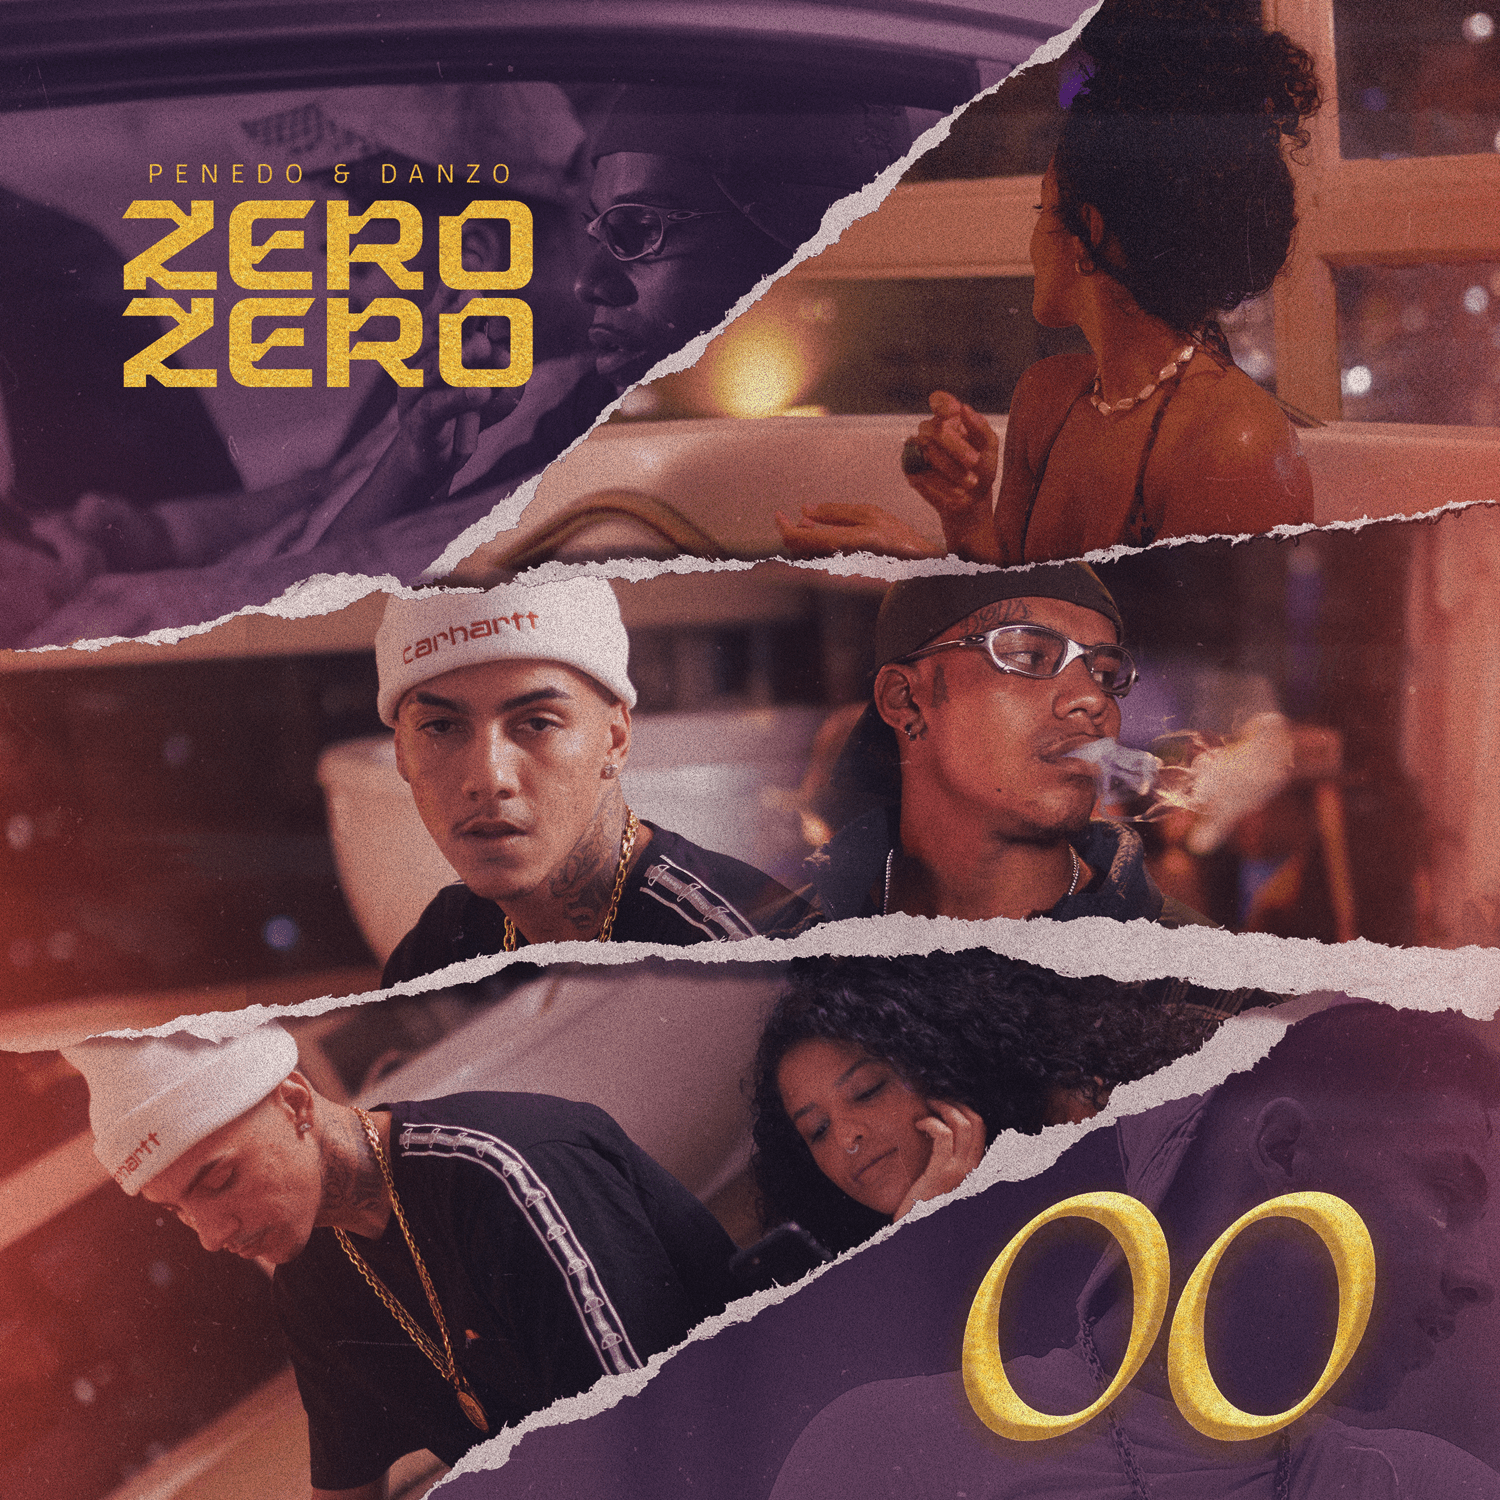 Penedo e Danzo lançam single “Zero Zero”: uma explosão de paixão e autenticidade